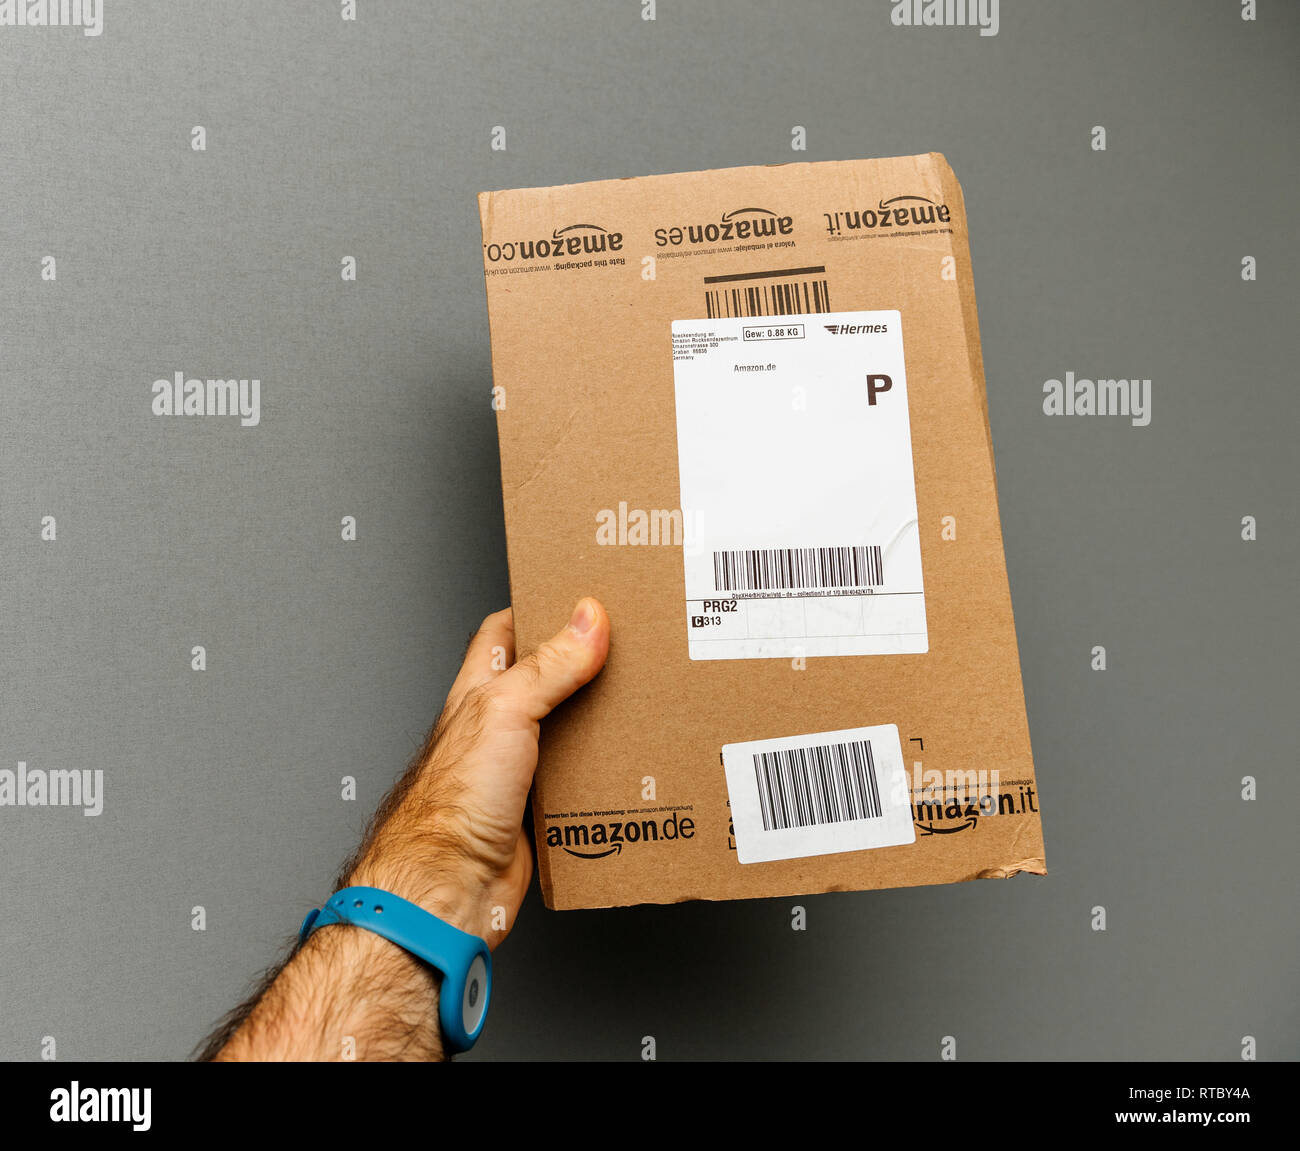 Amazon Paket Lieferung Stockfotos und -bilder Kaufen - Alamy